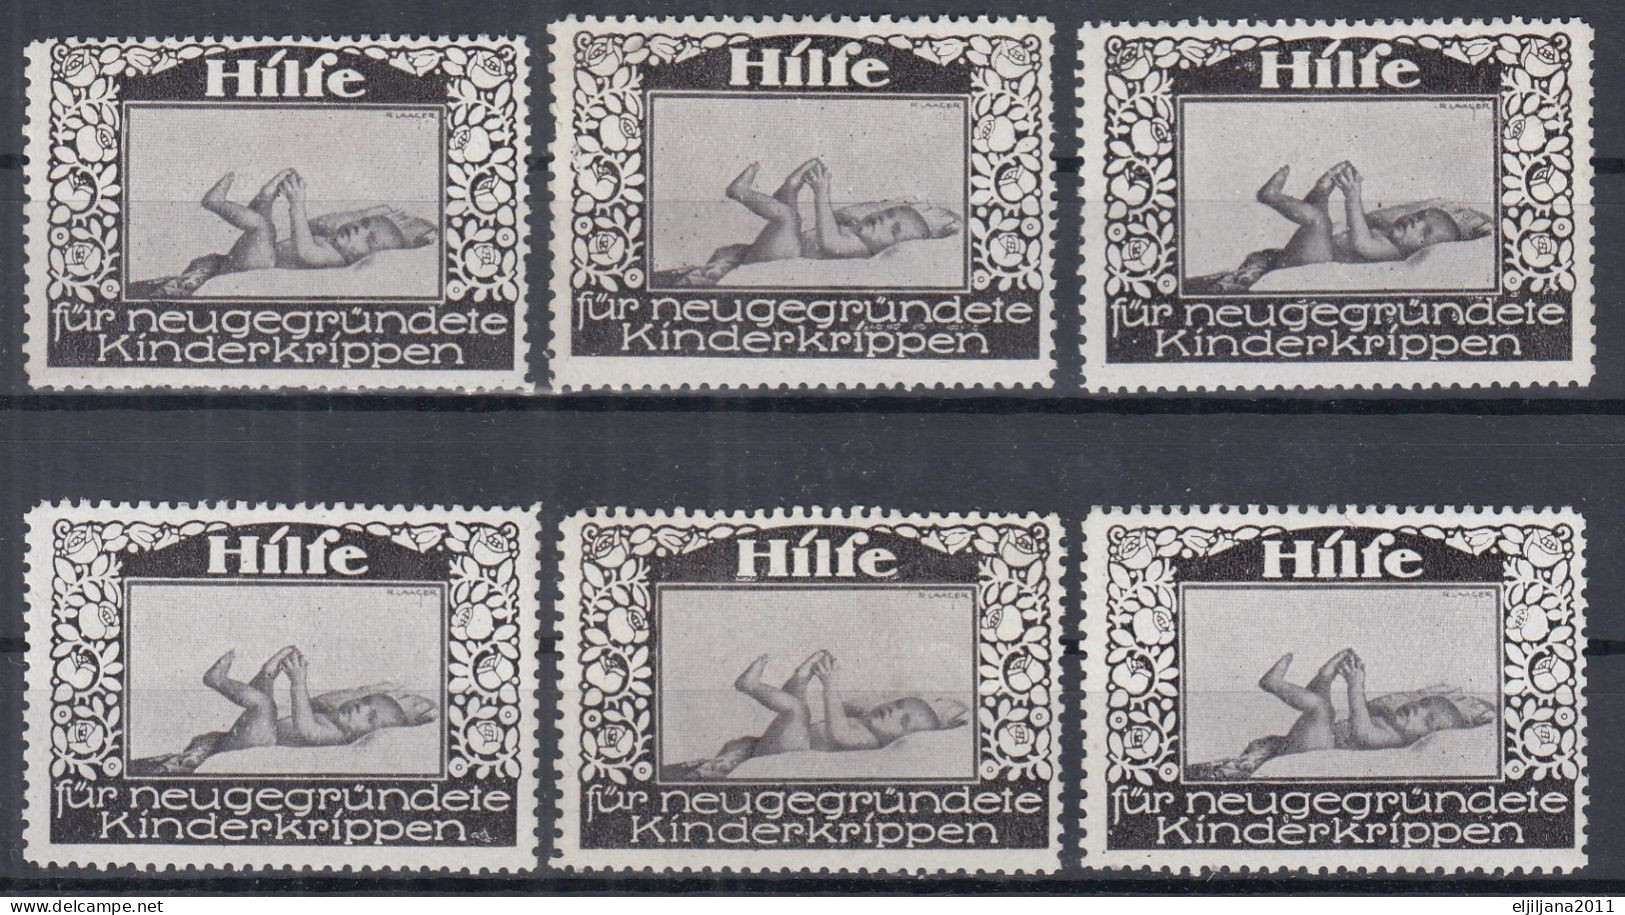 Austria / Österreich 1910 ⁕ HILFE Für Neugegründete / Kinderkrippen - Crèches ⁕ 6v MNH Cinderella Stamp - Erinnophilie